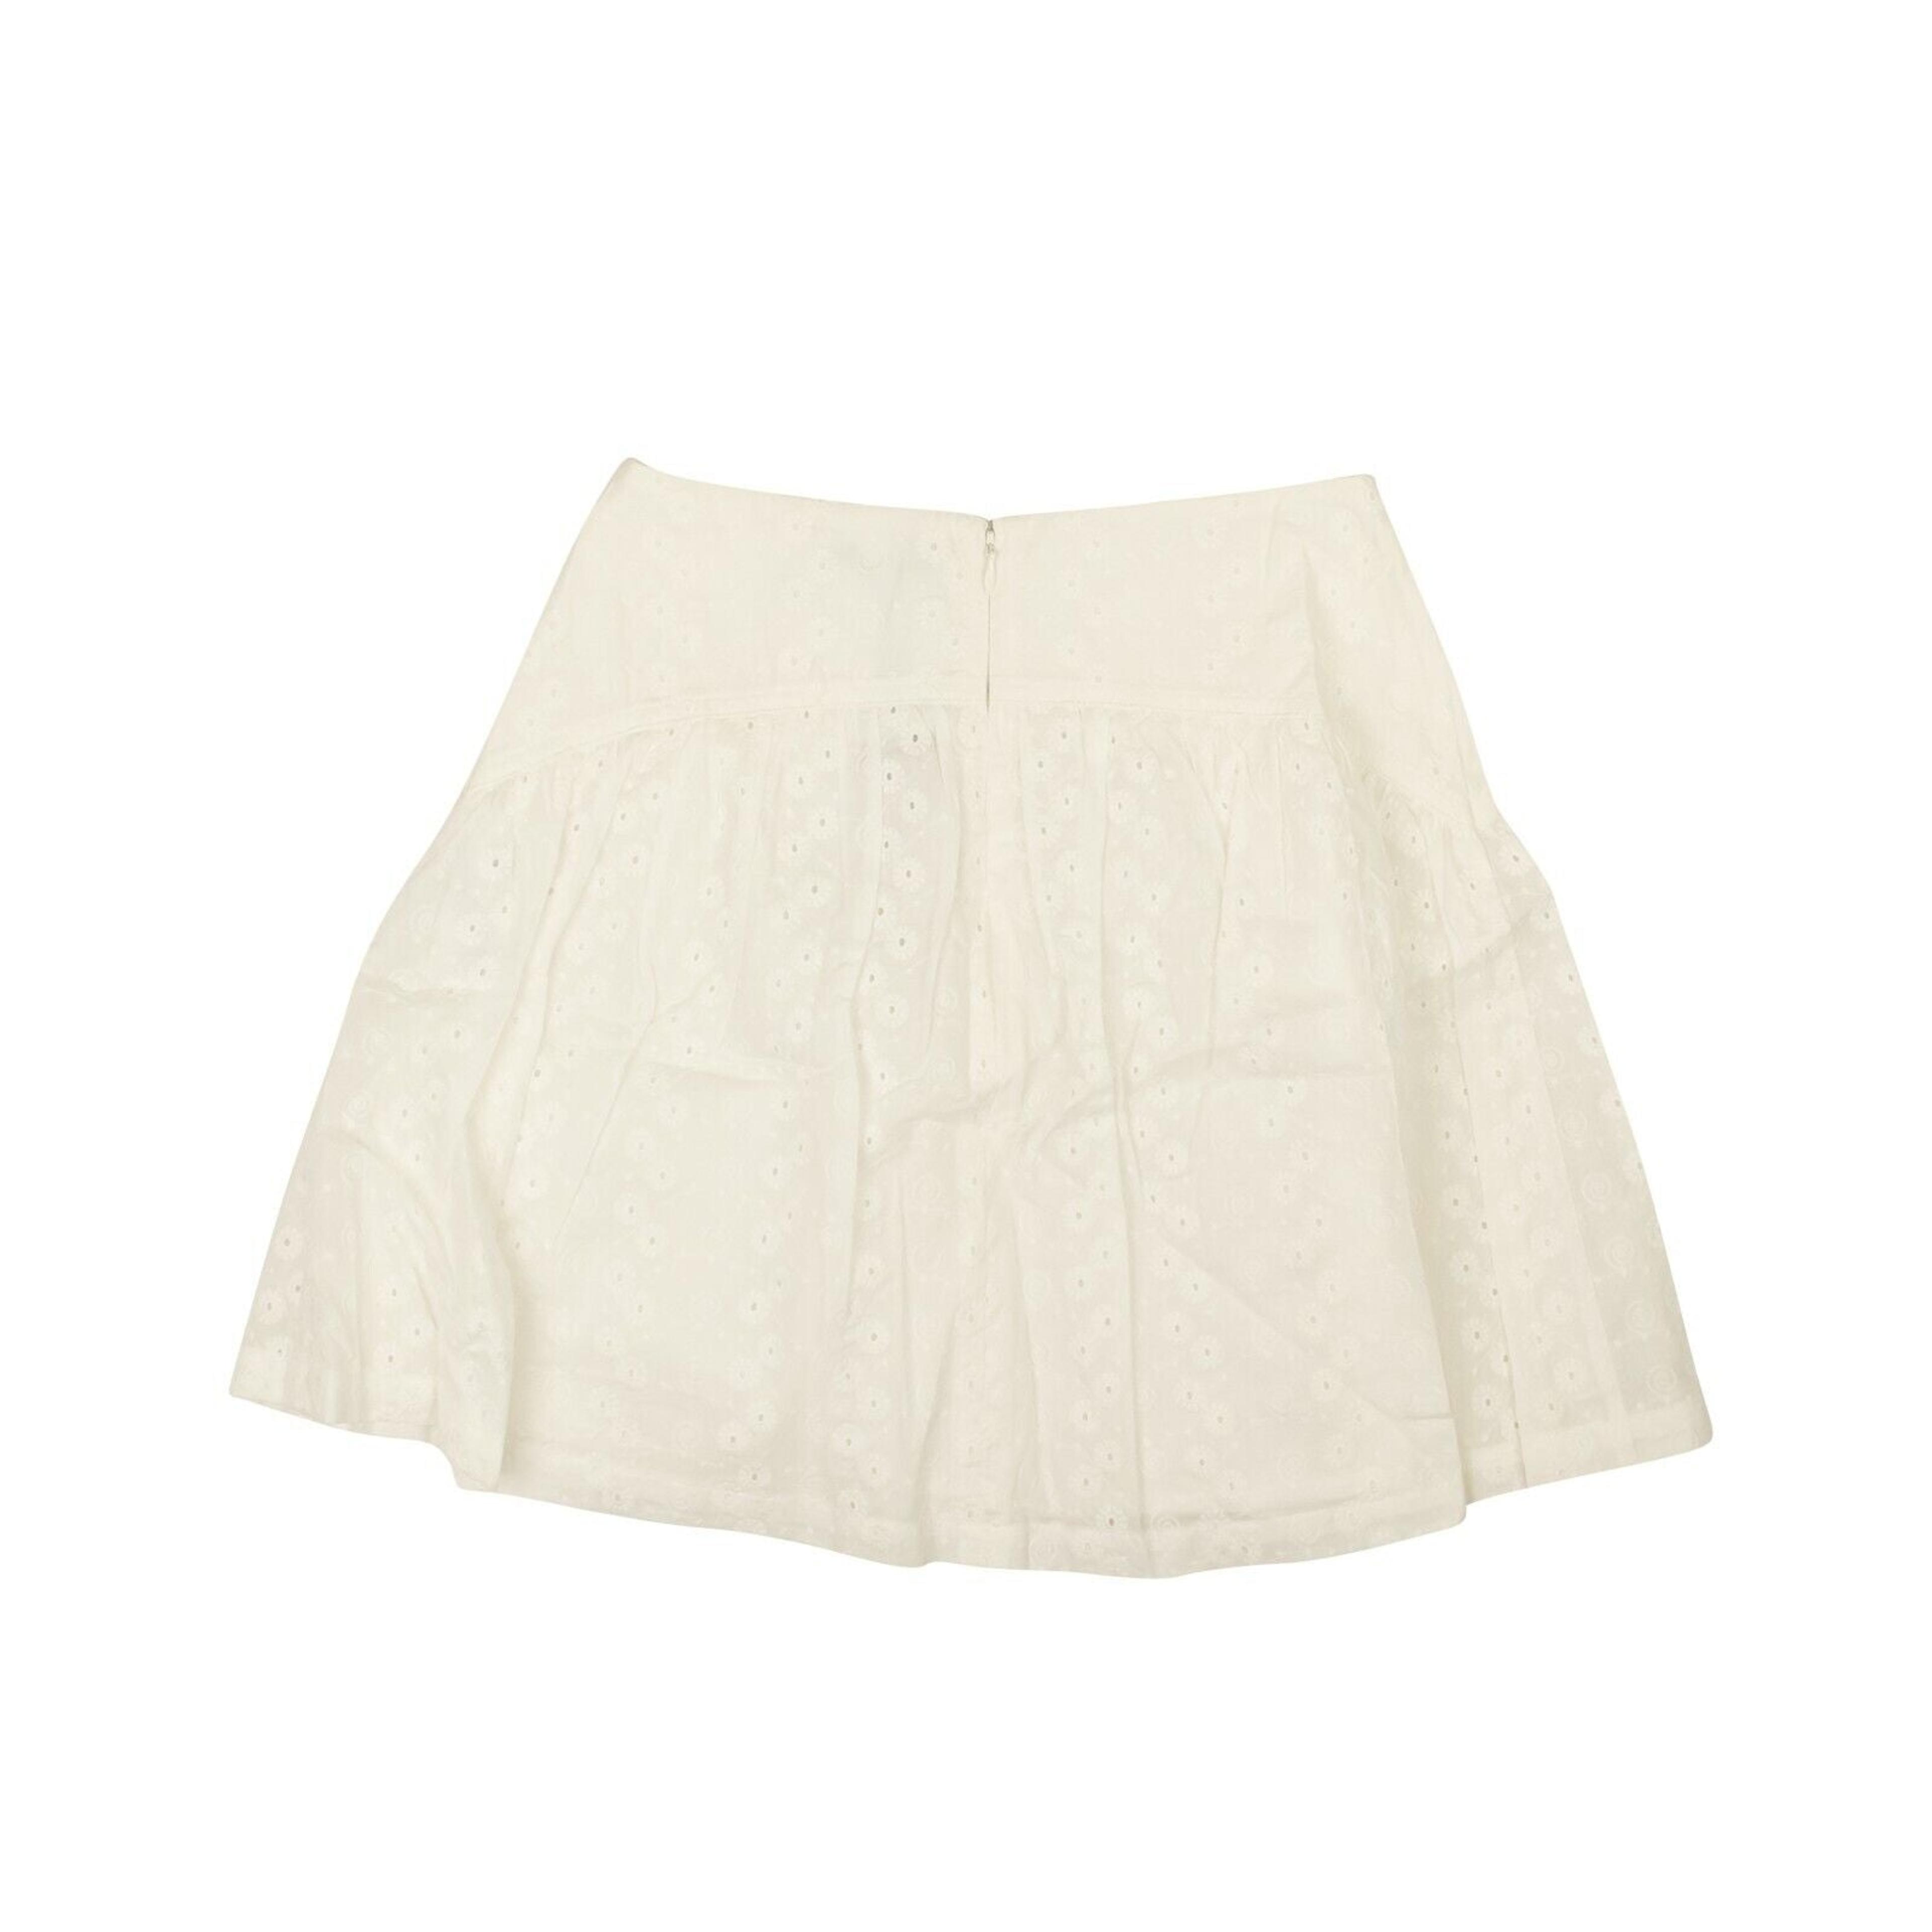 Alternate View 2 of Optic White Cotton Eyelet Mini Skirt